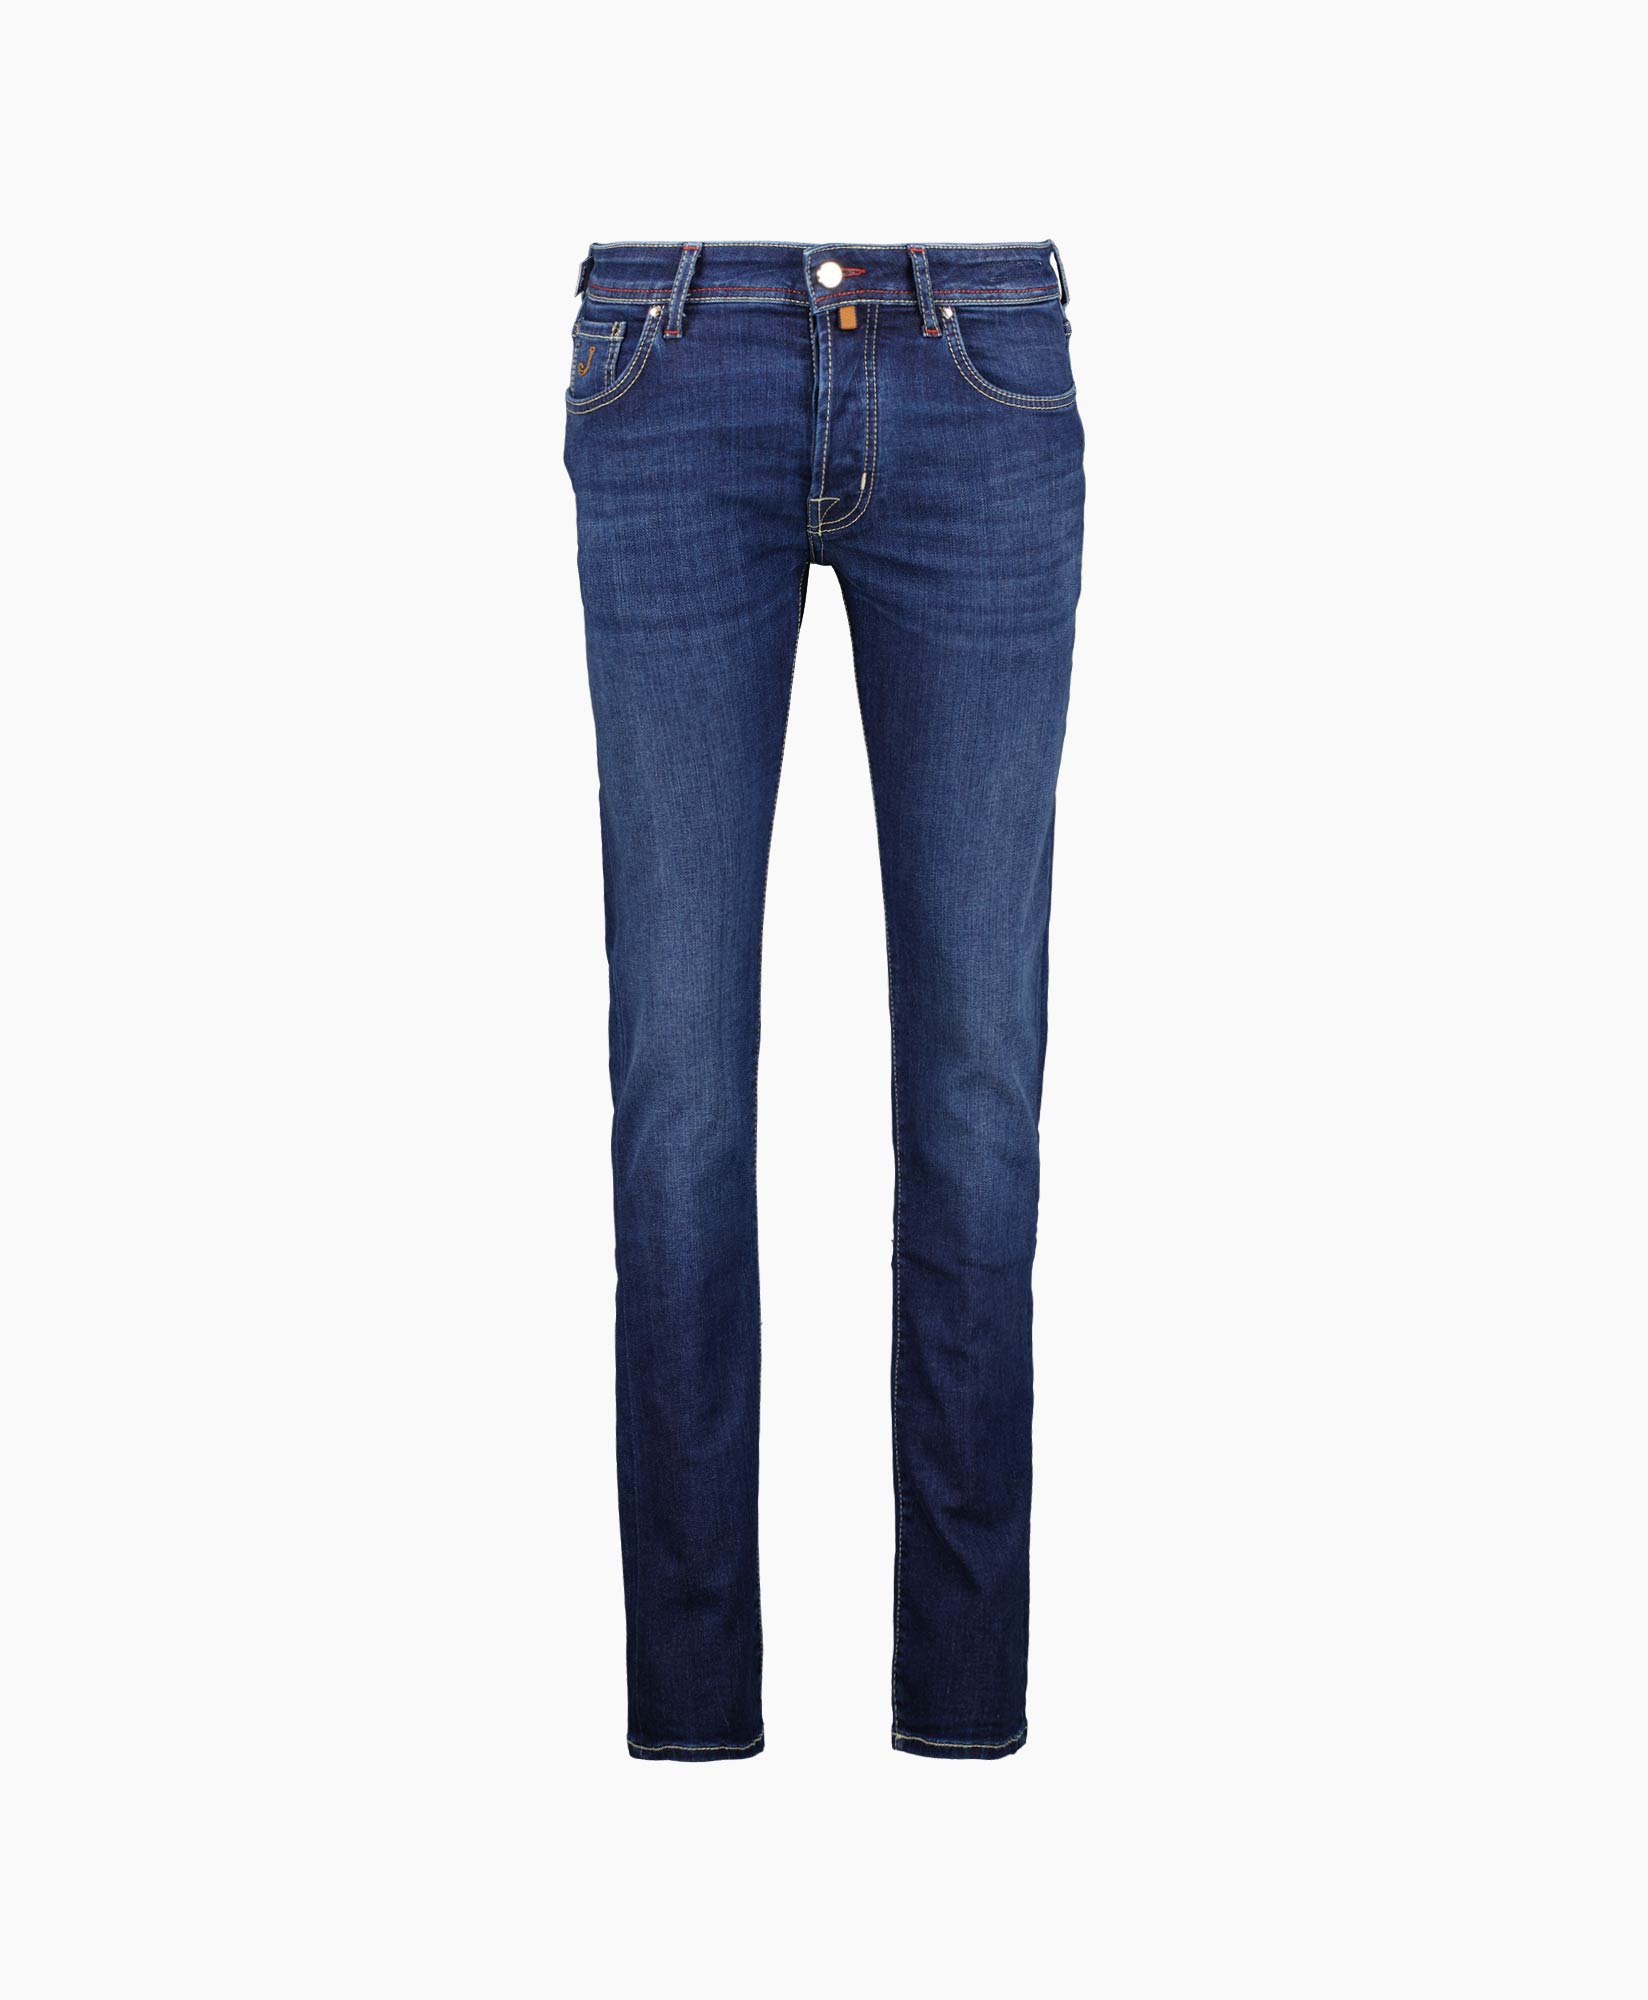 Jacob Cohen Jeans 5 Pkt Slim Fit Bard Blauw